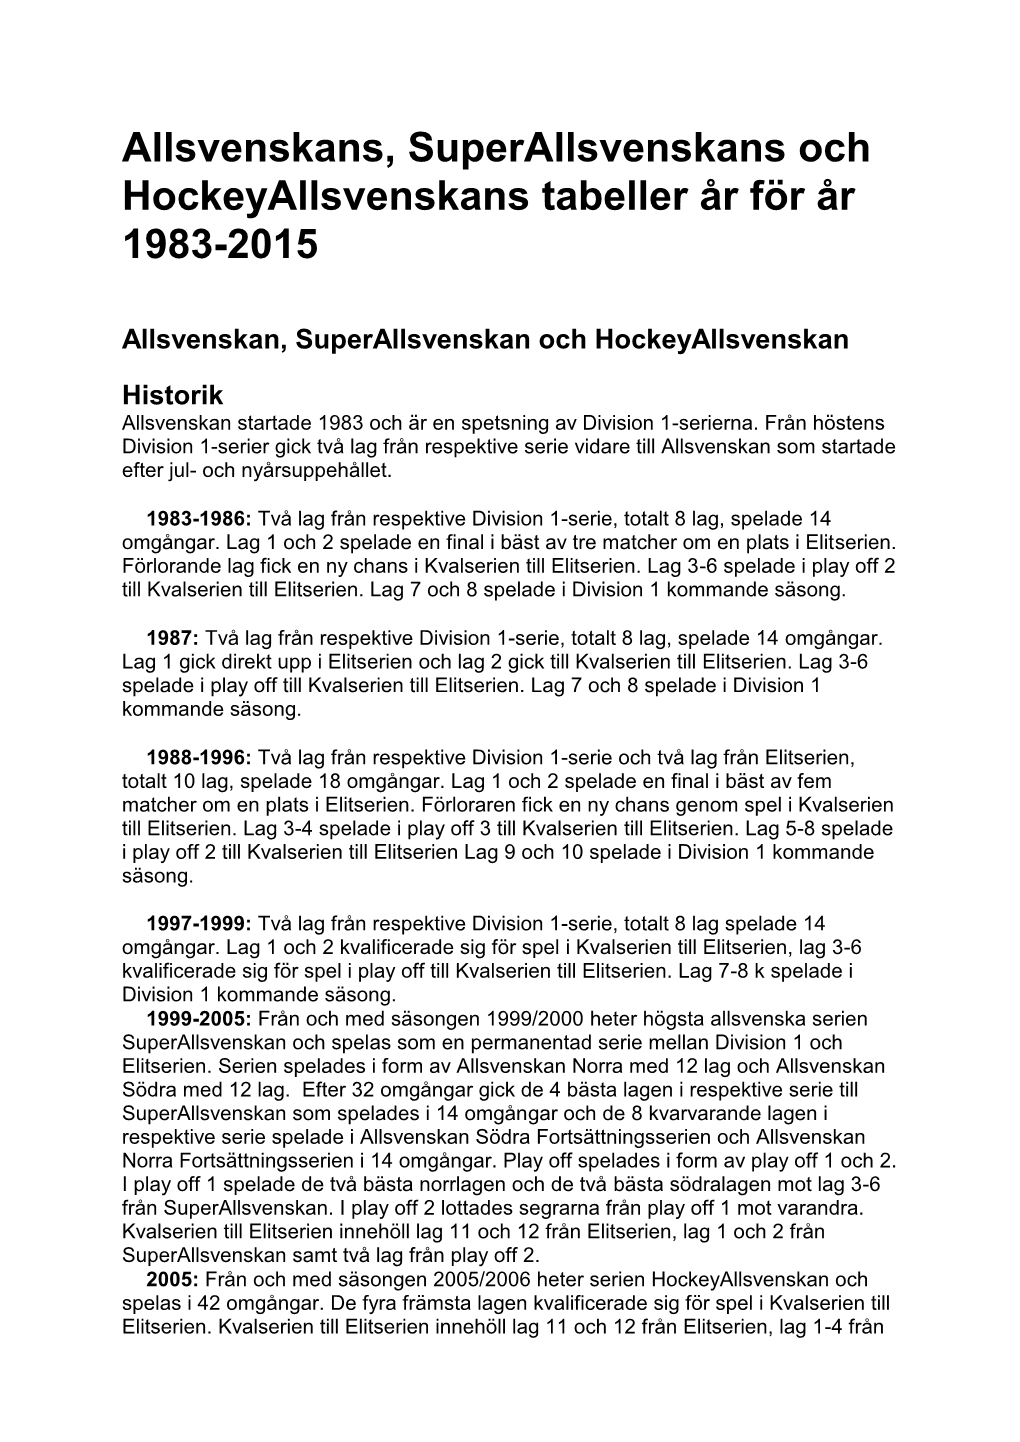 Allsvenskans, Superallsvenskans Och Hockeyallsvenskans Tabeller År För År 1983-2015